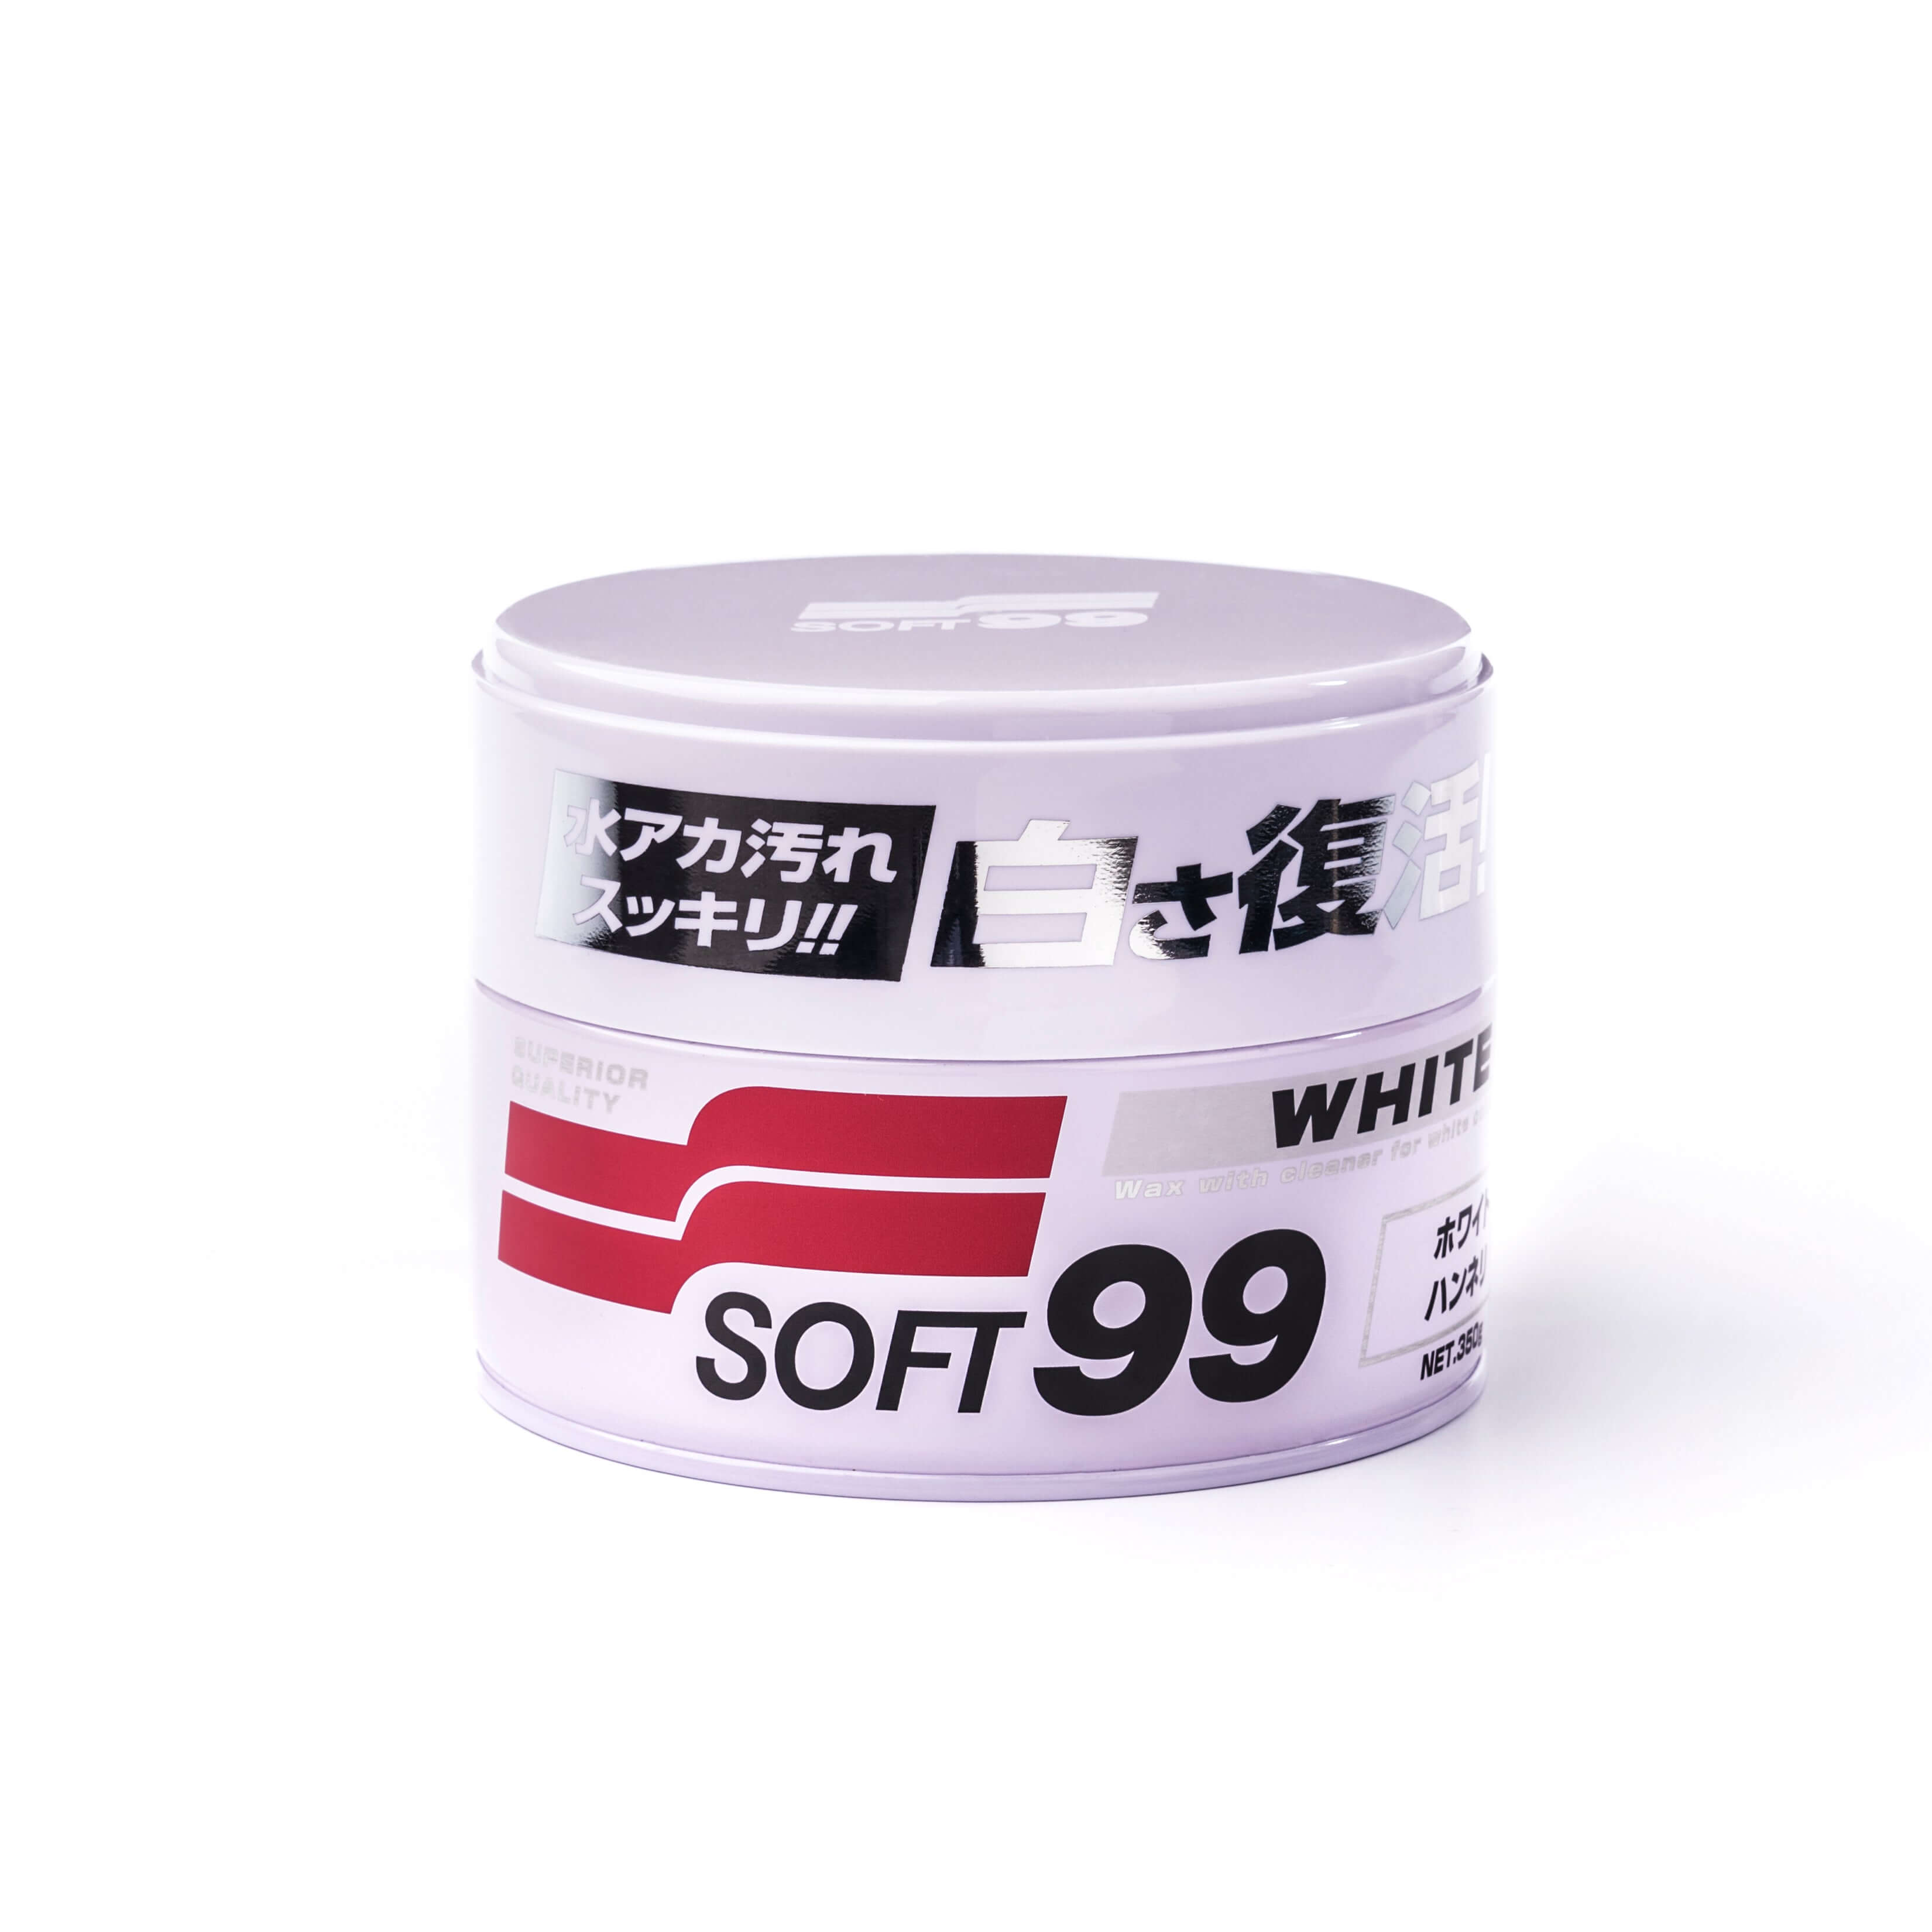 Soft99 Mirror Shine Wax – Dark Color – Scopic Auto